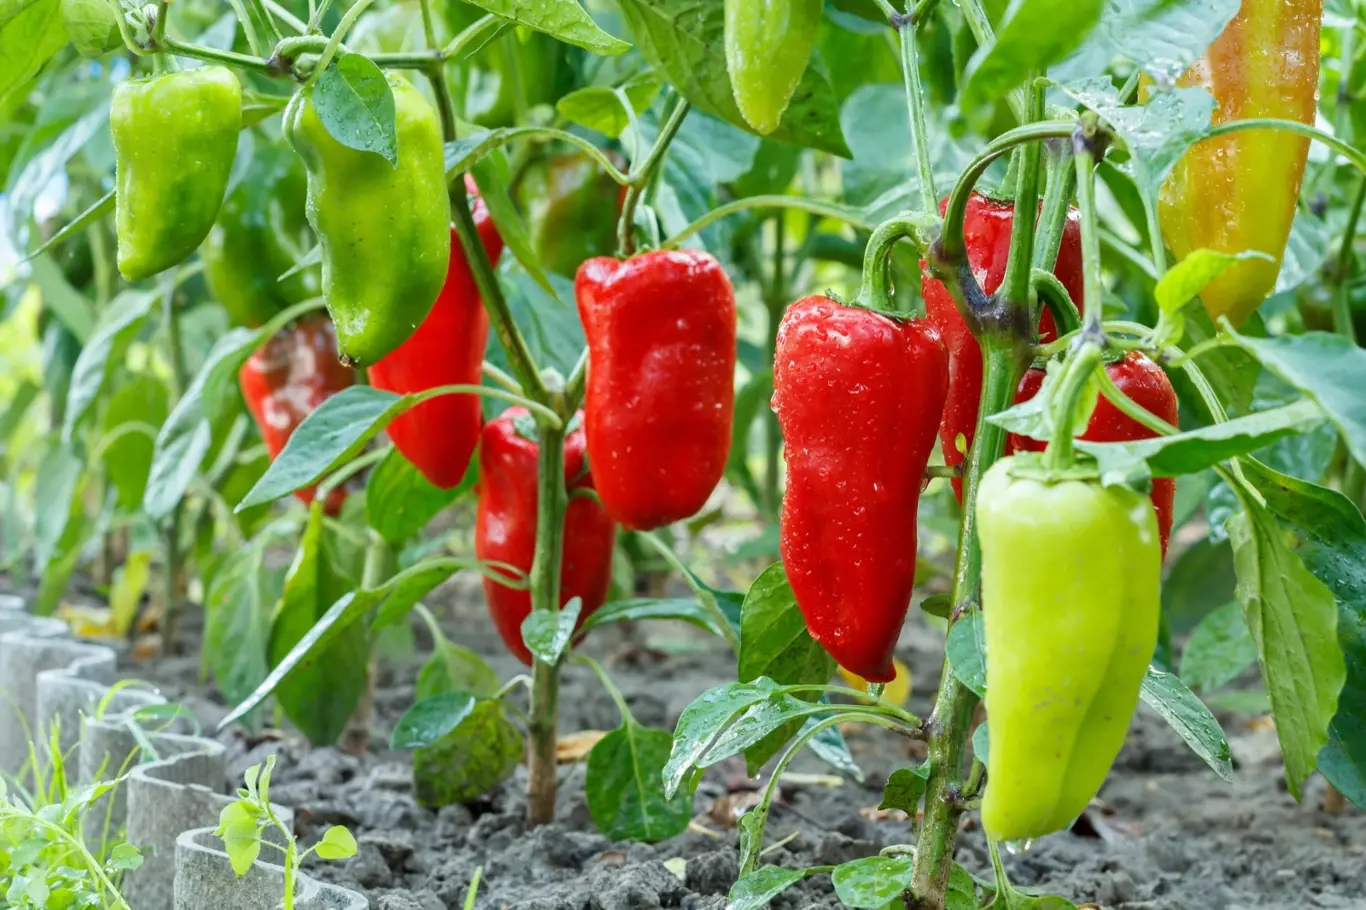 Umítě pěstovat papriky? Víte, kdy je zaštipovat?